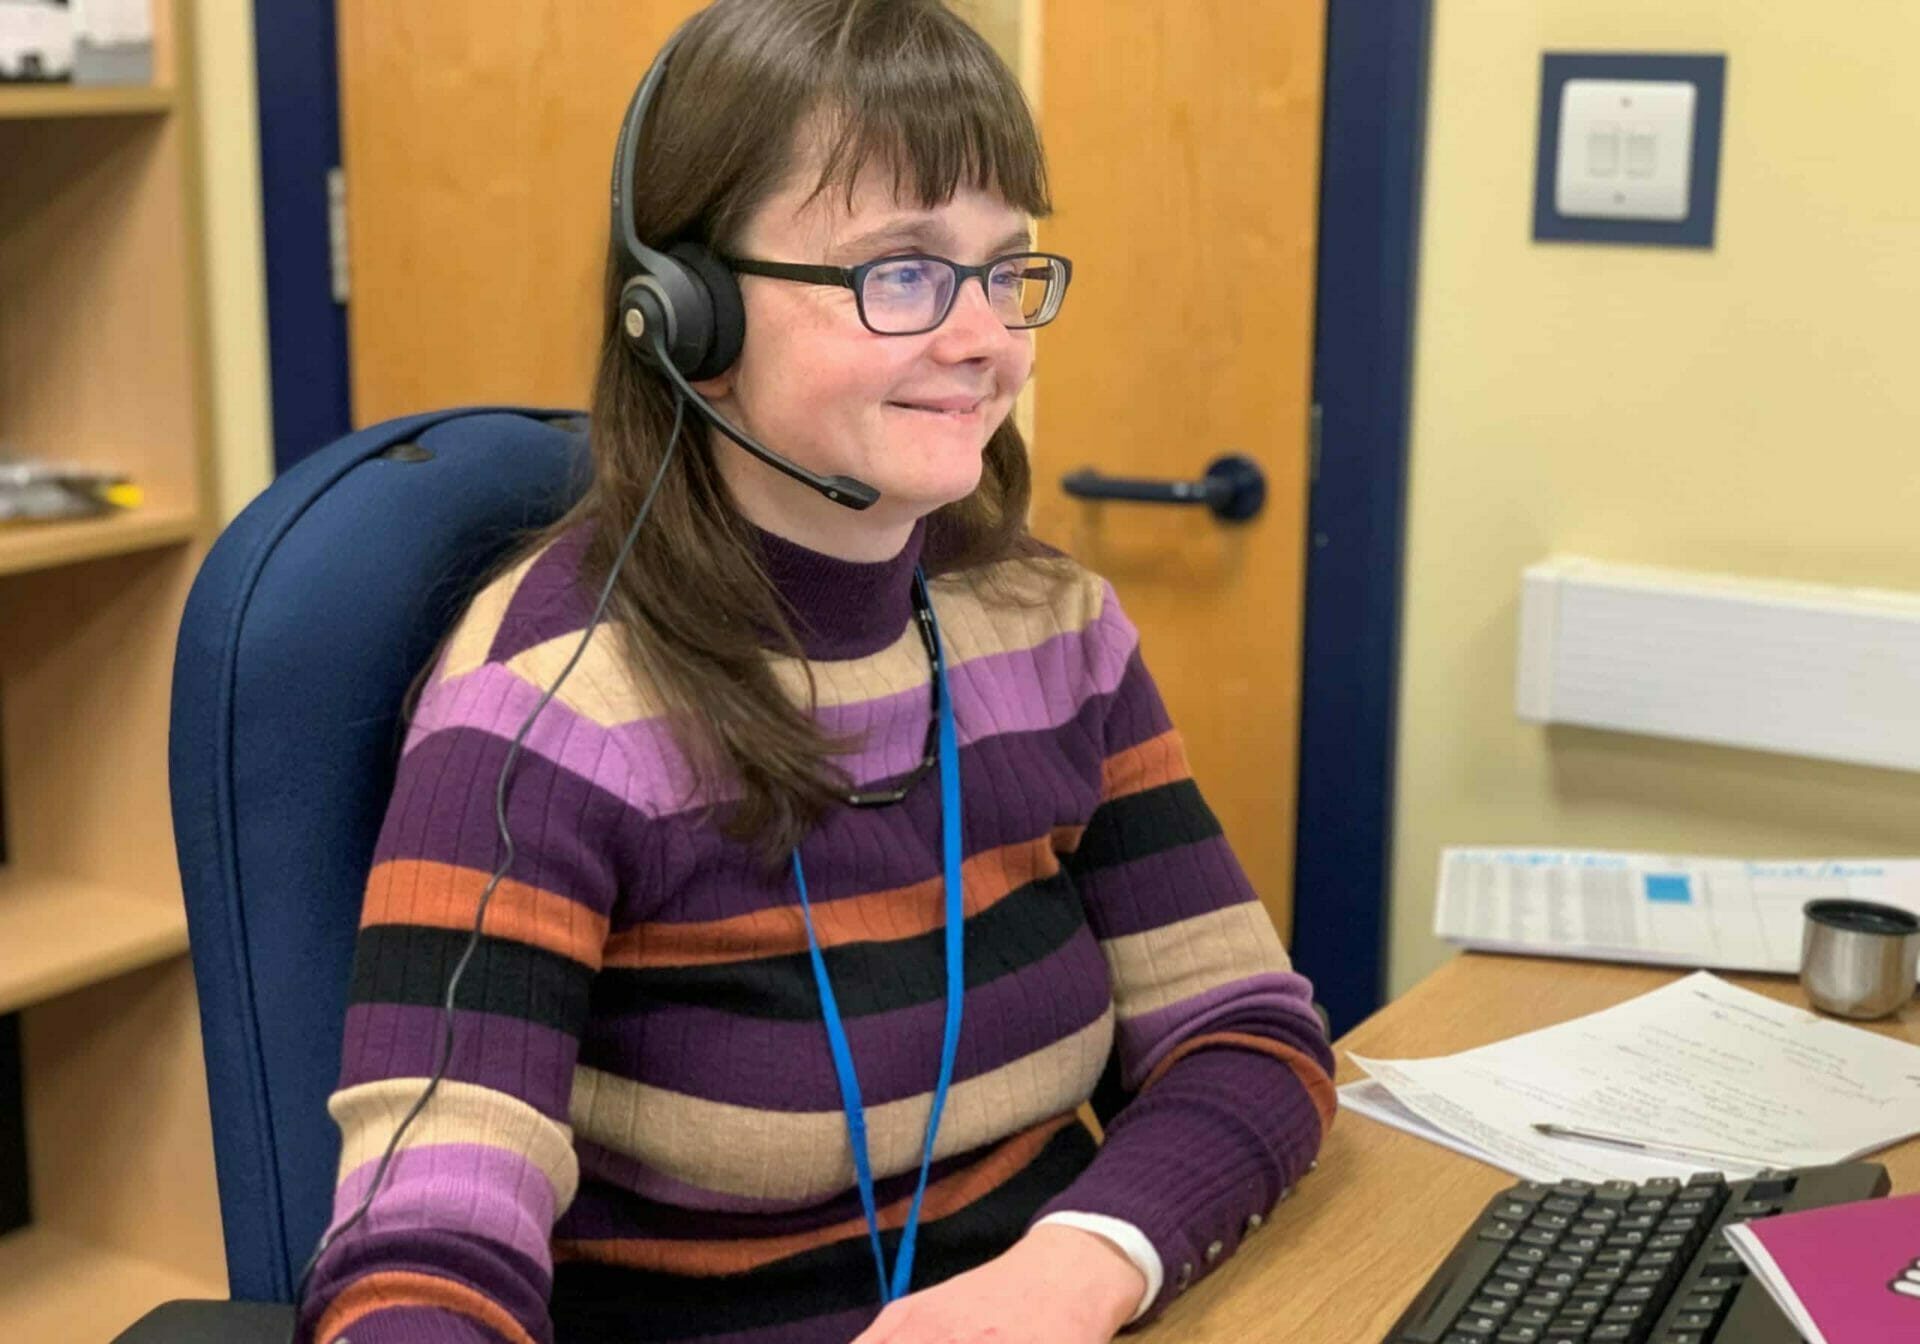 Receiving calls on the Deafblind UK helpline